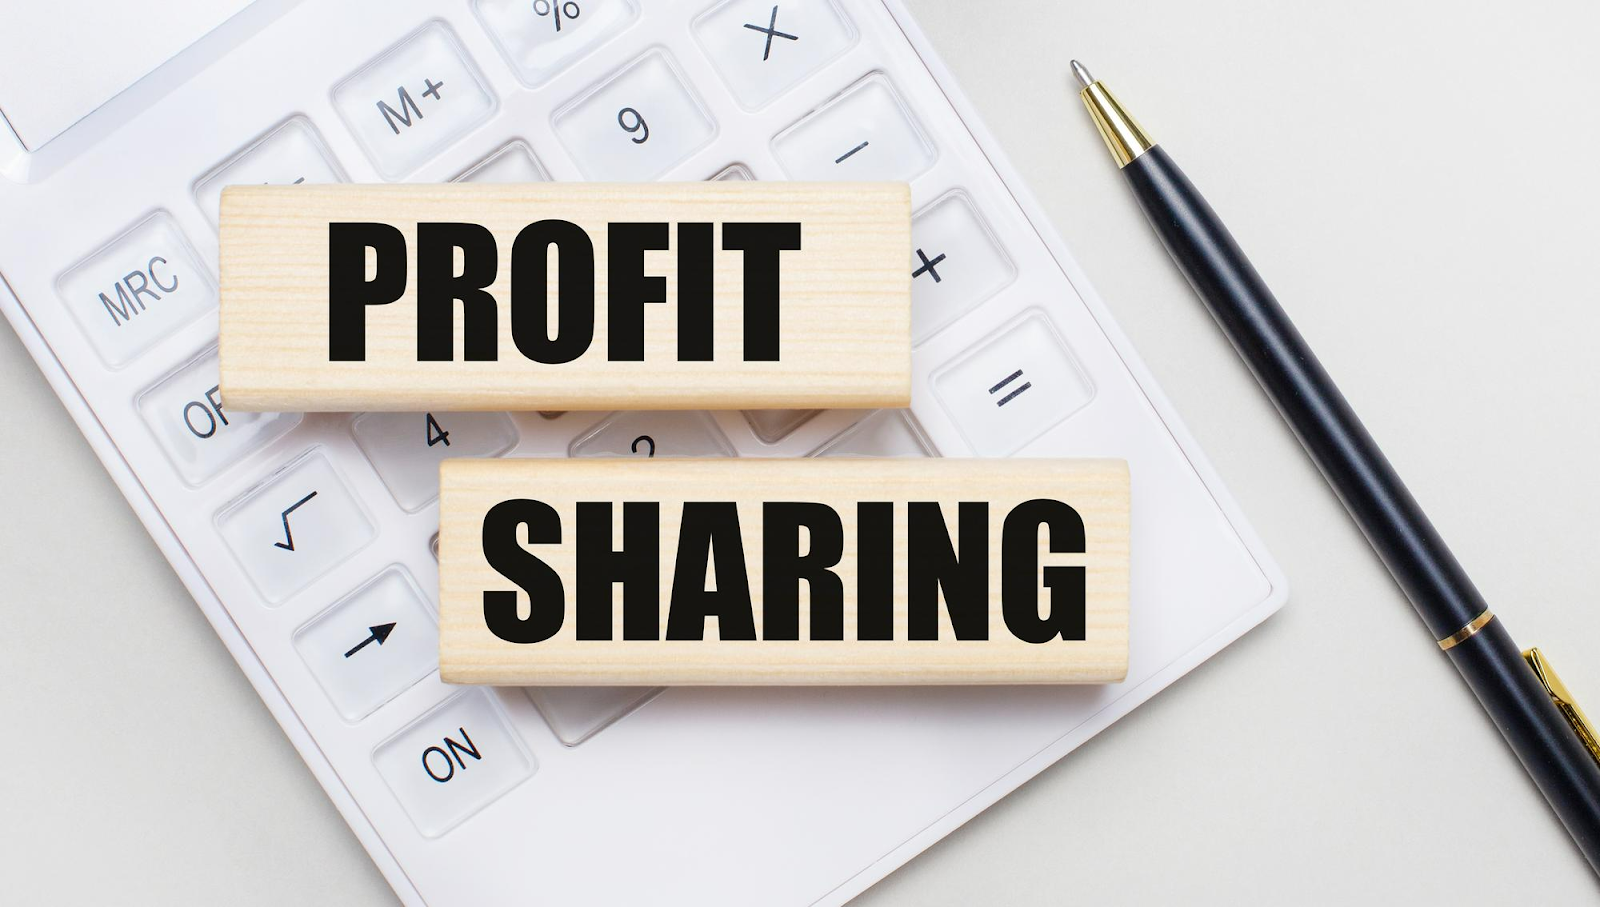 Profit sharing merupakan sistem bagi hasil yang diterapkan oleh perusahaan dan mempunyai banyak manfaat